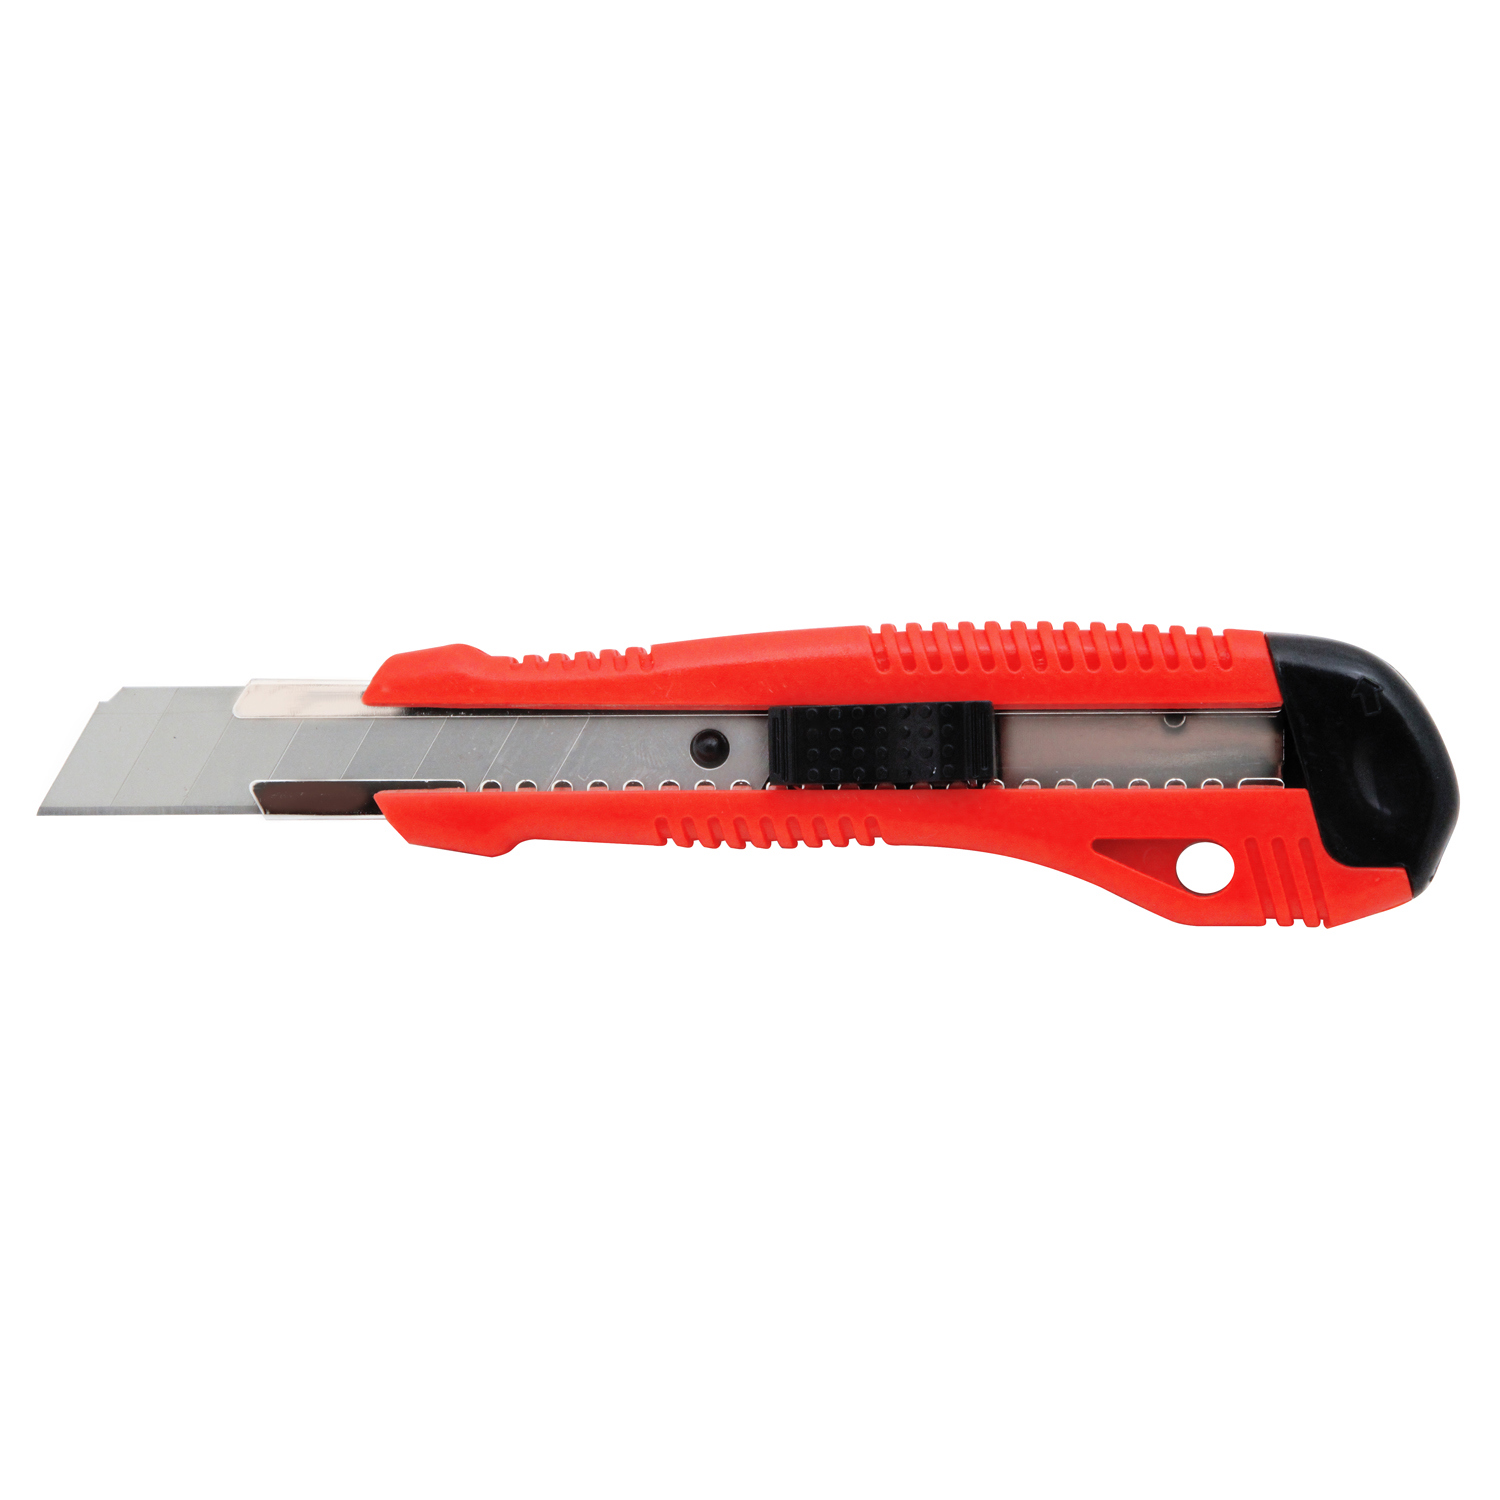 Нож строительный Vira Auto-lock 831212  –  по низкой цене .